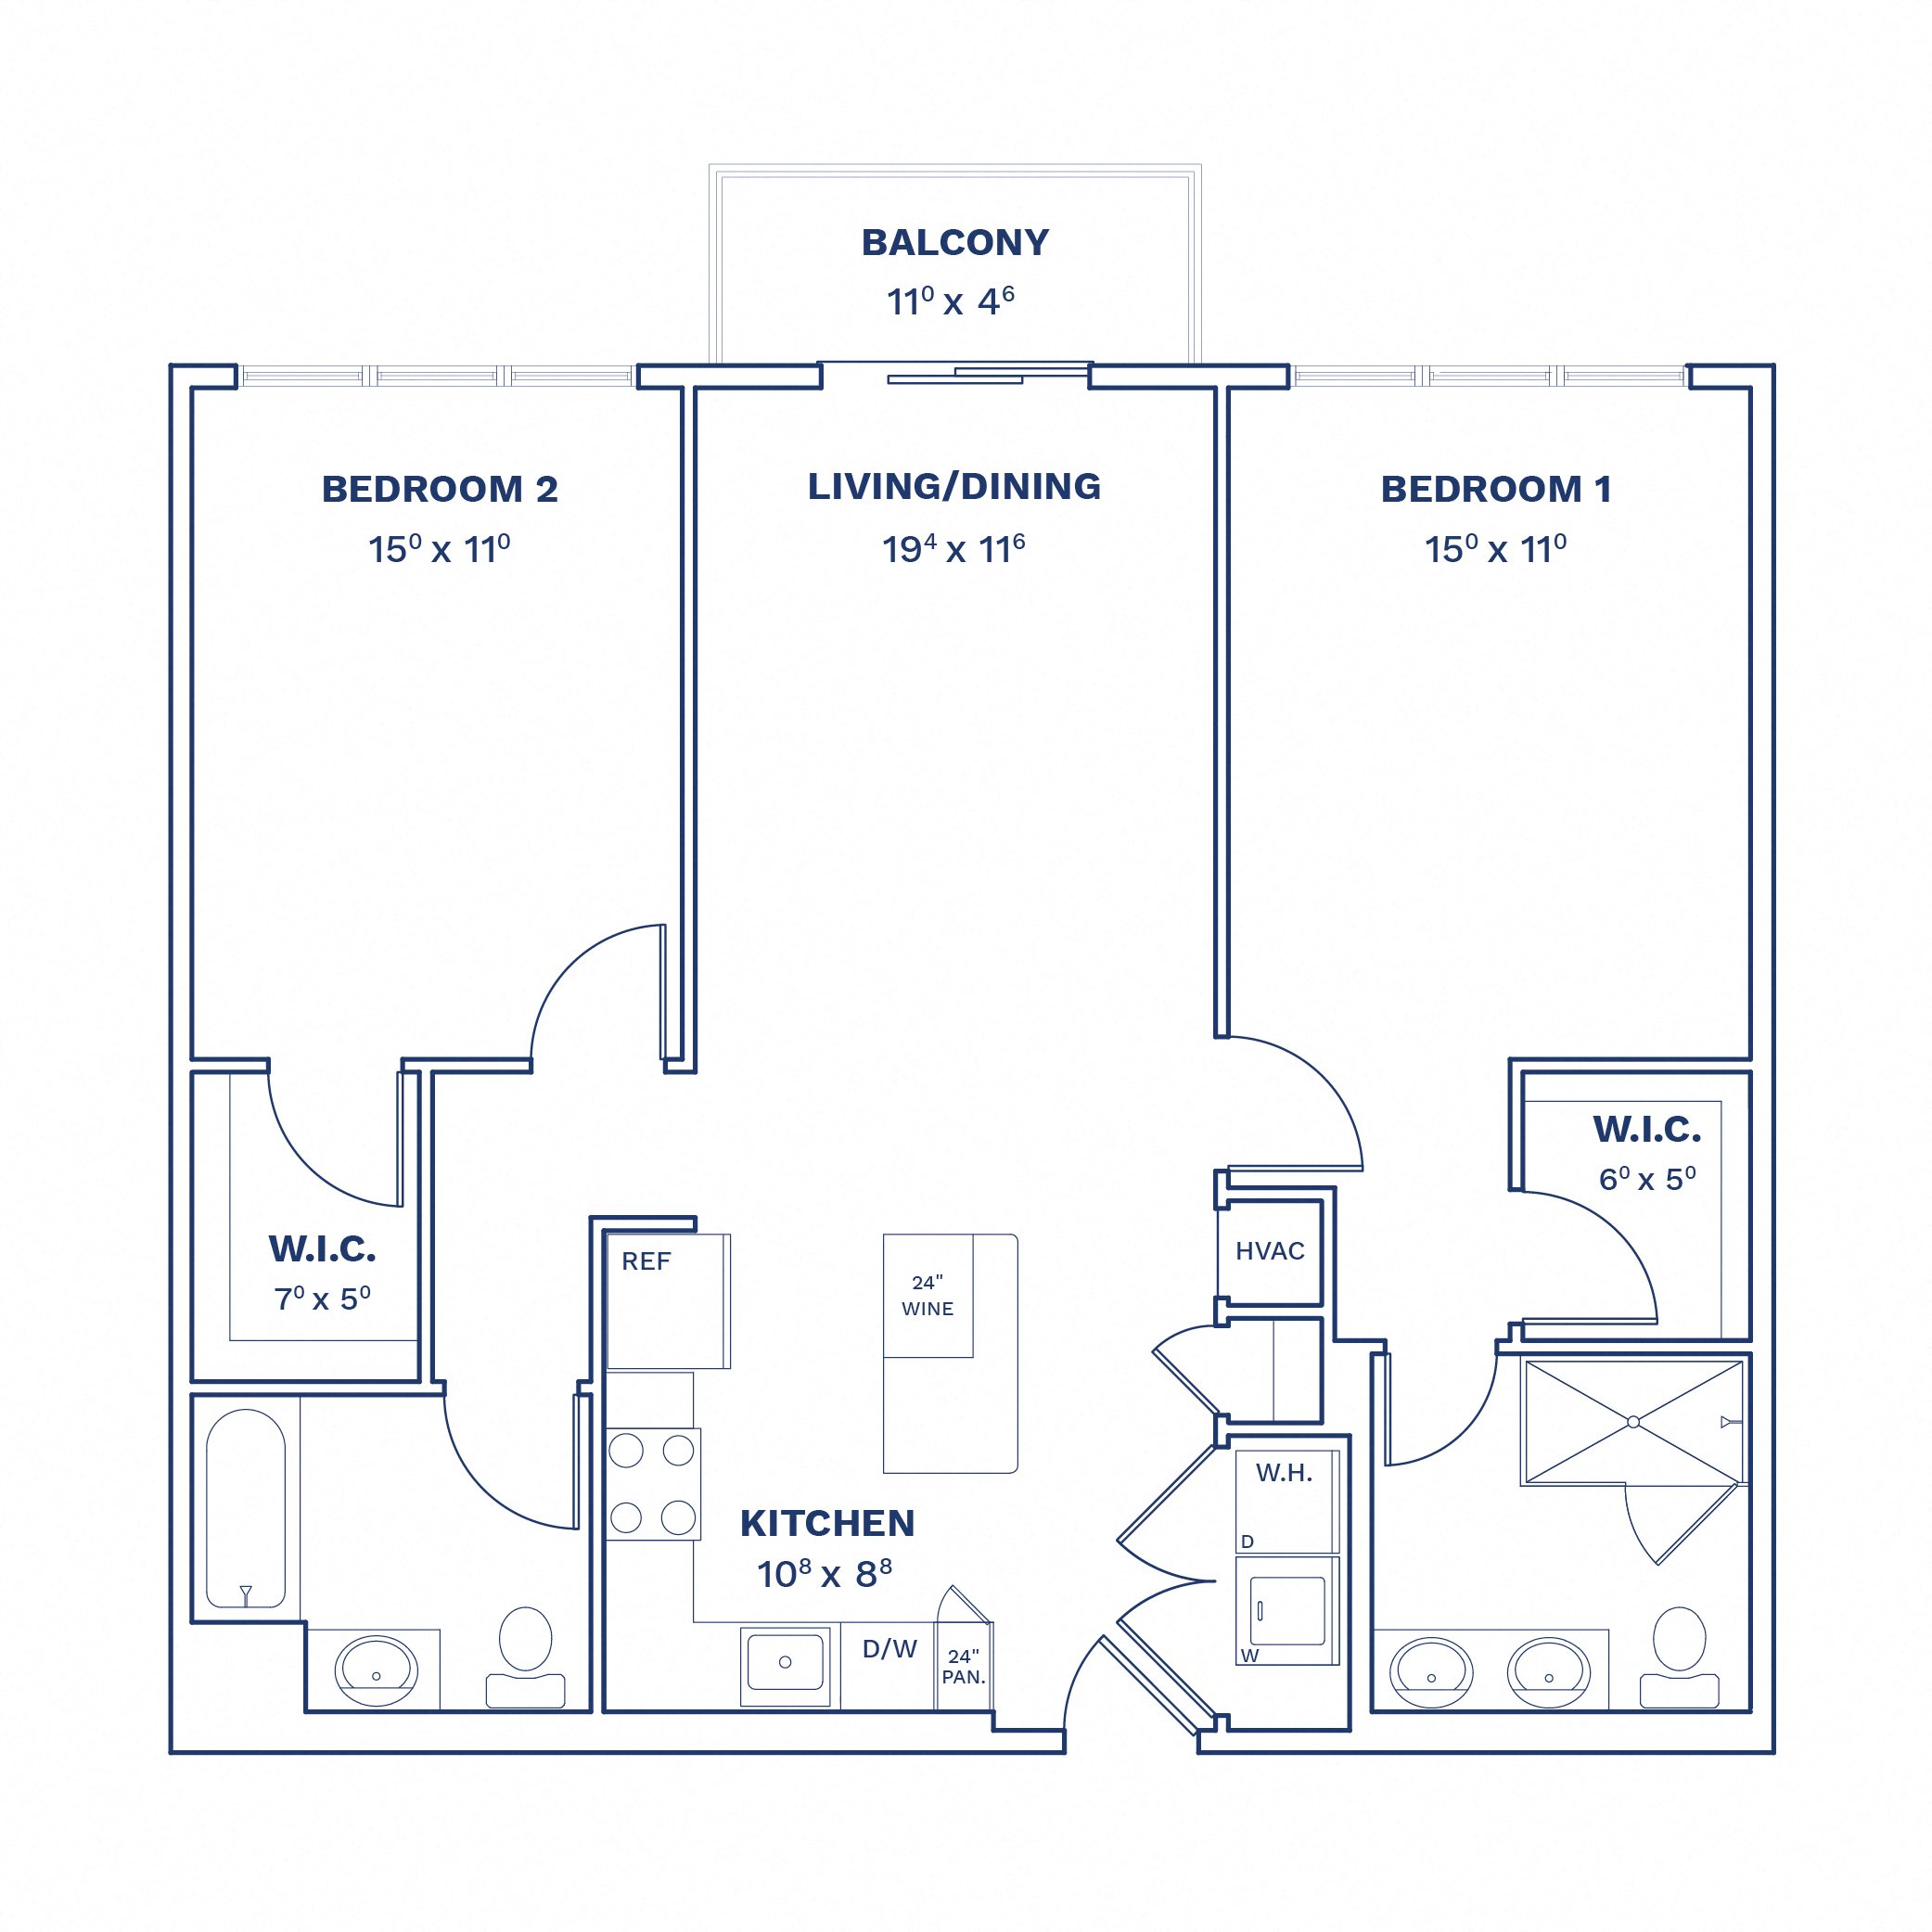 Floorplan of Unit 2 Bed/2 Bath-B2.1